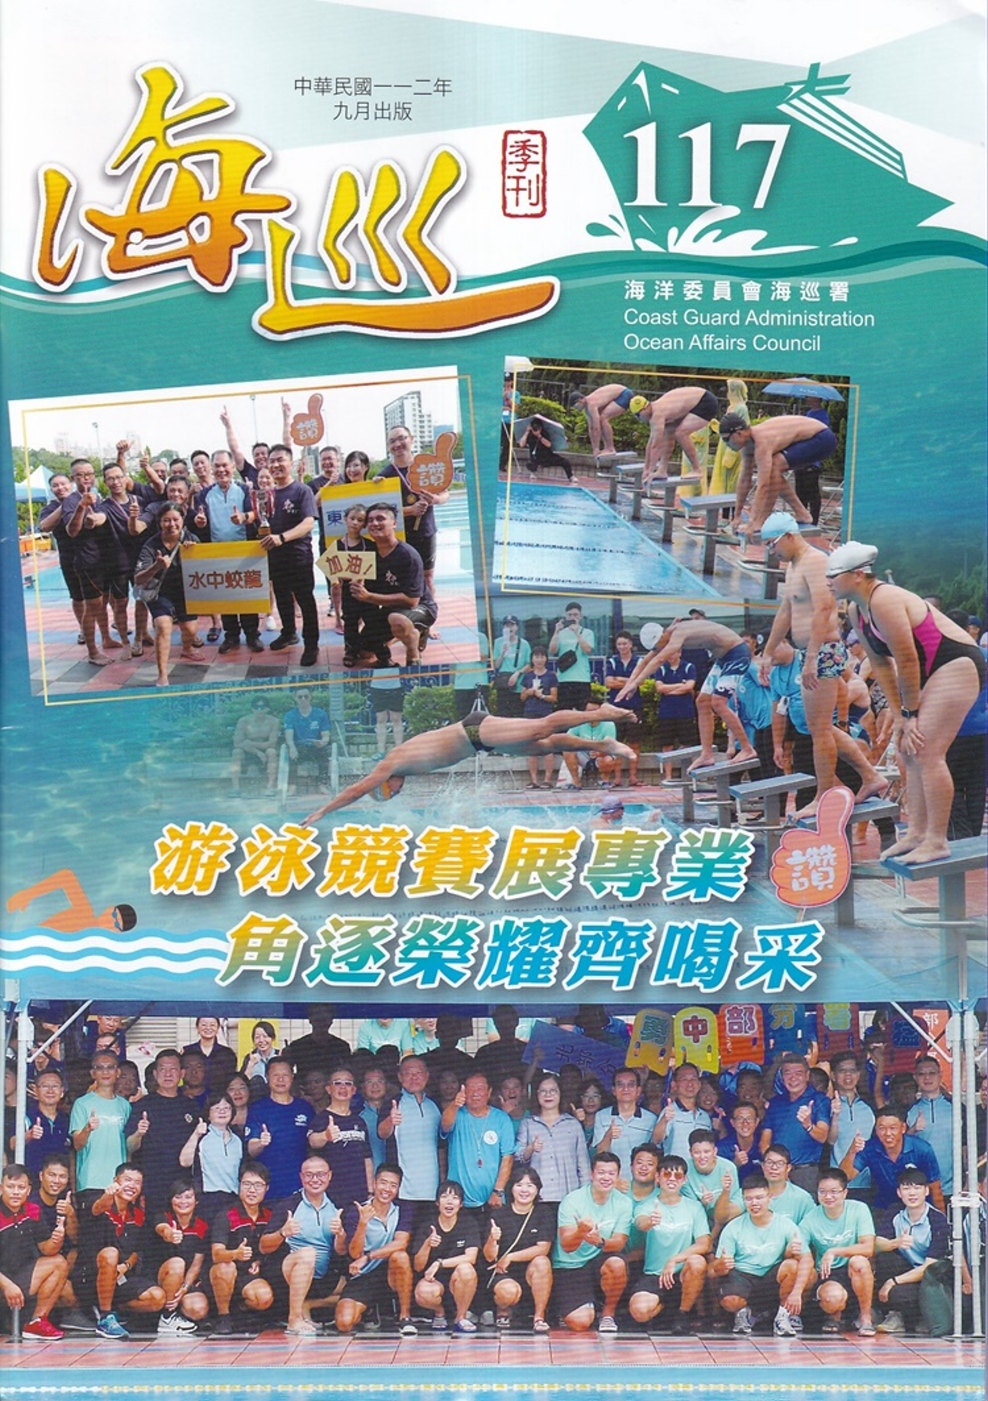 海巡季刊117期(112.09)：游泳競賽展專業 角逐榮耀齊喝采